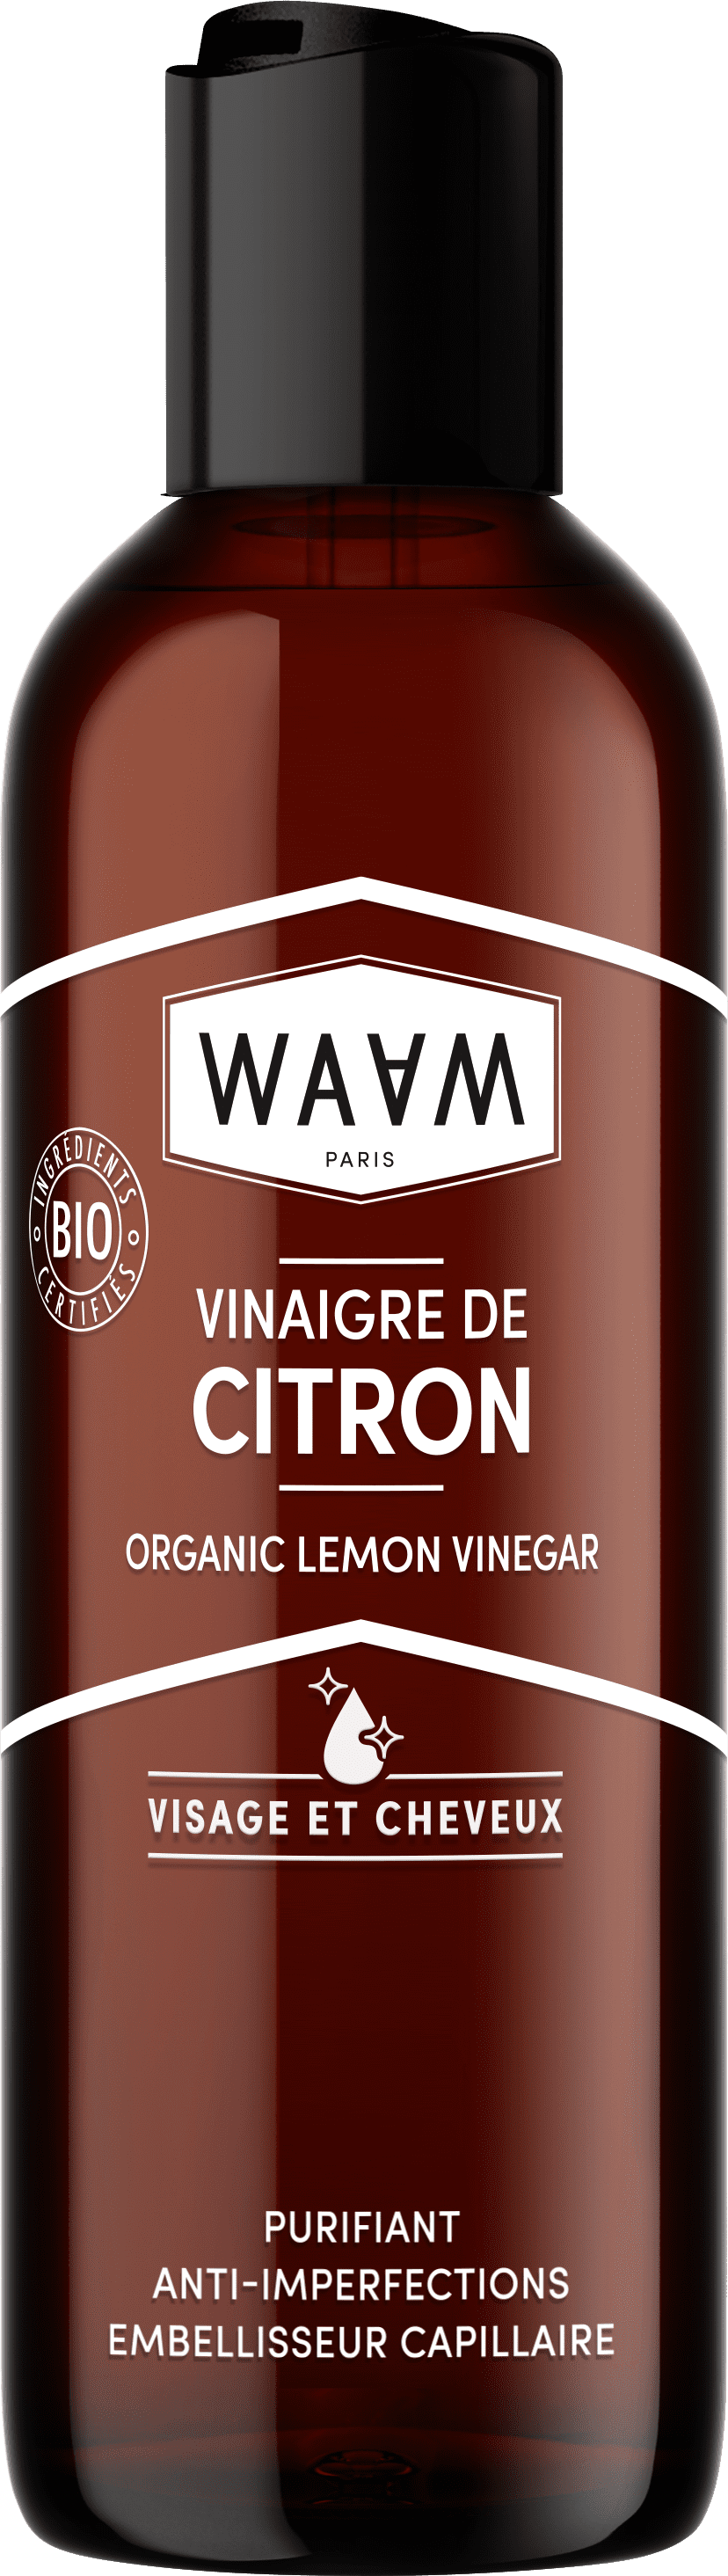  Vinaigre de Citron